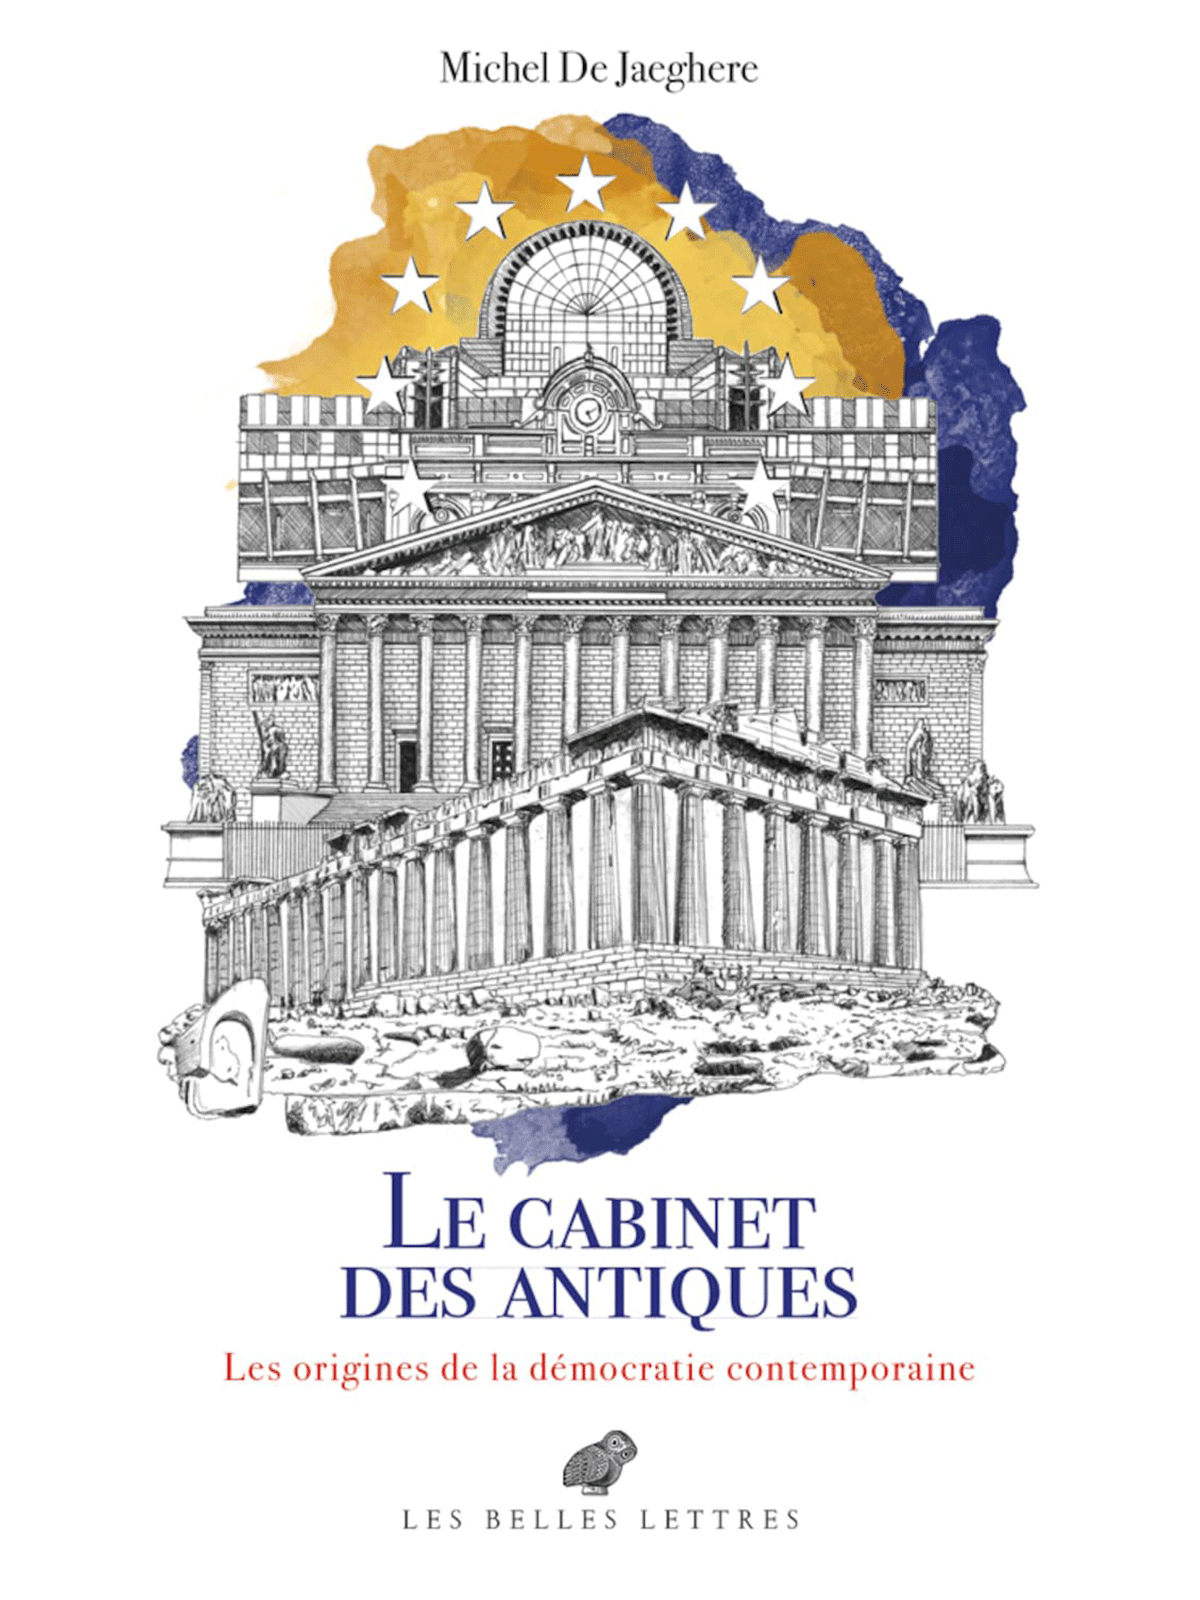 Michel De Jaeghere : Le Cabinet des antiques